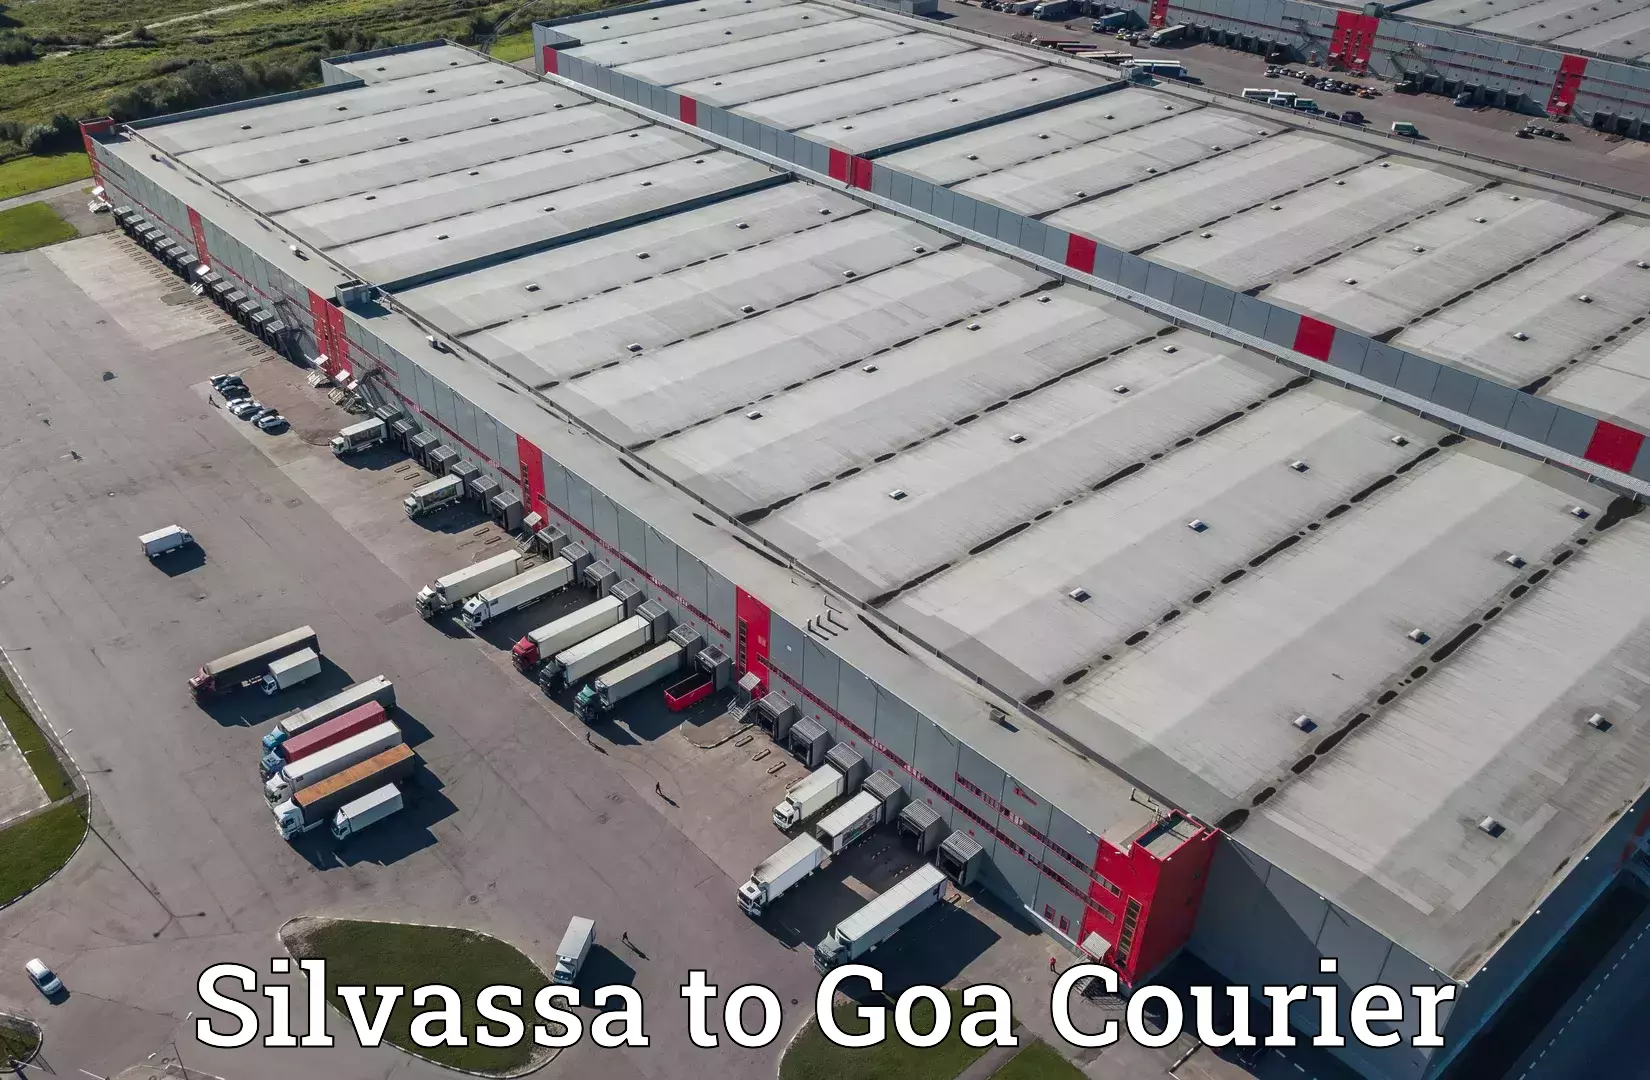 Doorstep delivery service Silvassa to Goa